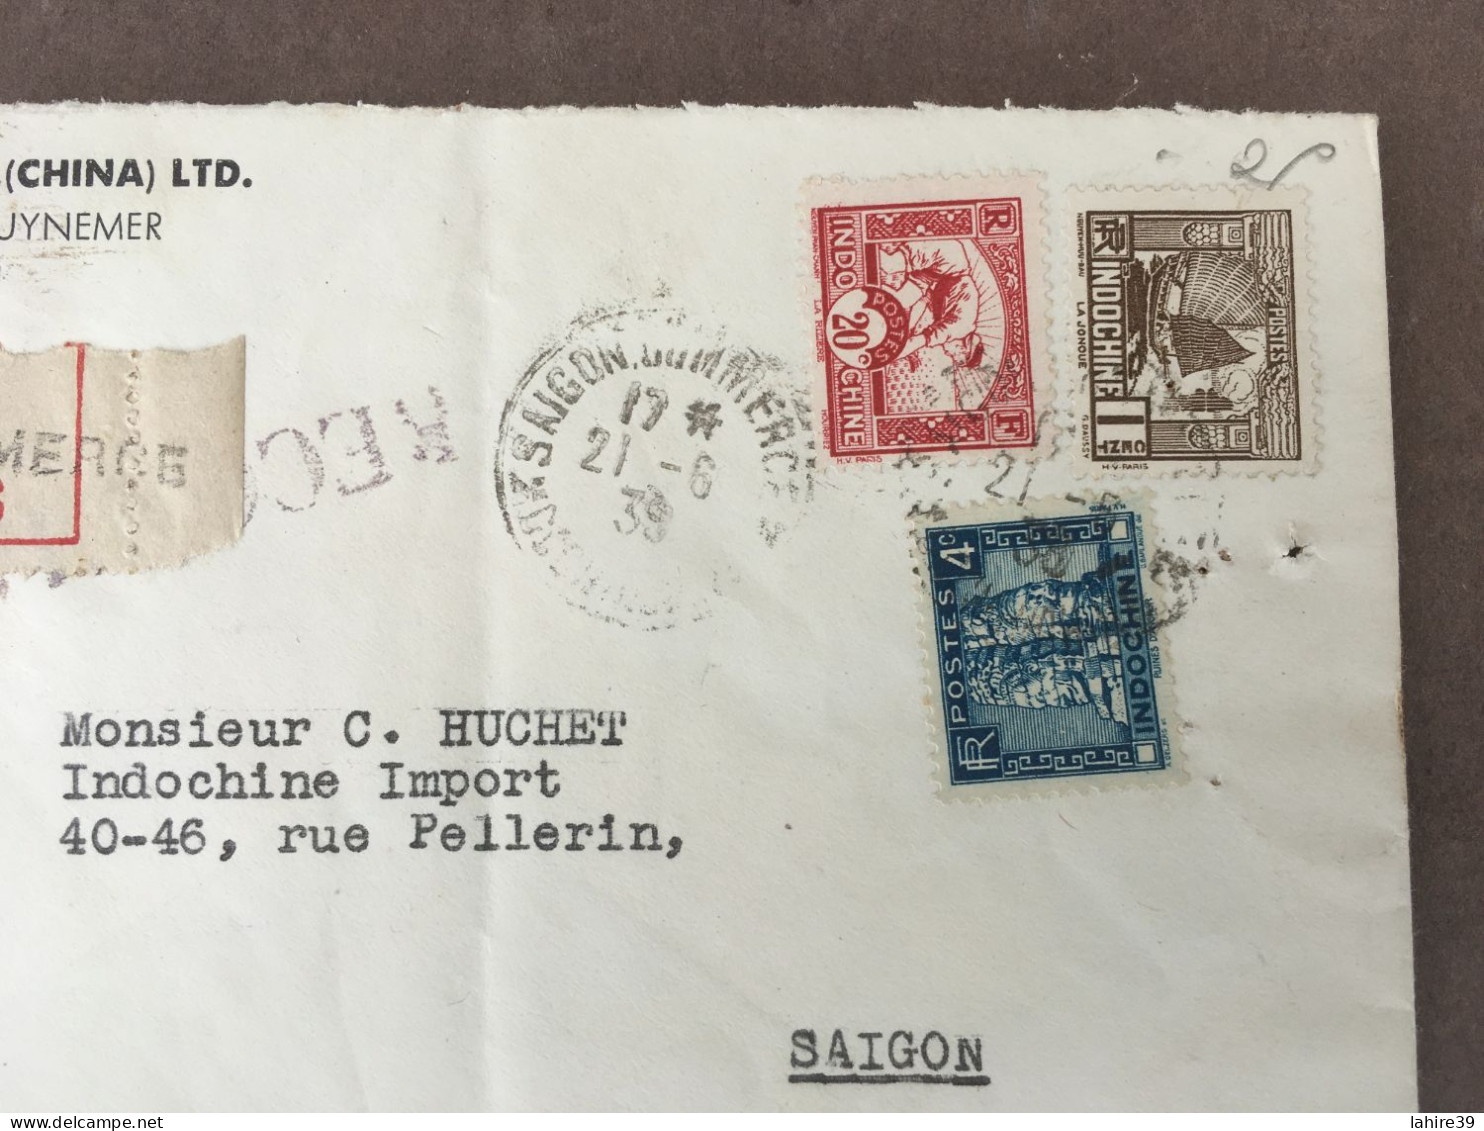 Enveloppe Timbrée / Recommandée / Texas Compagny / Texaco / Saigon / 1939 - 1900 – 1949